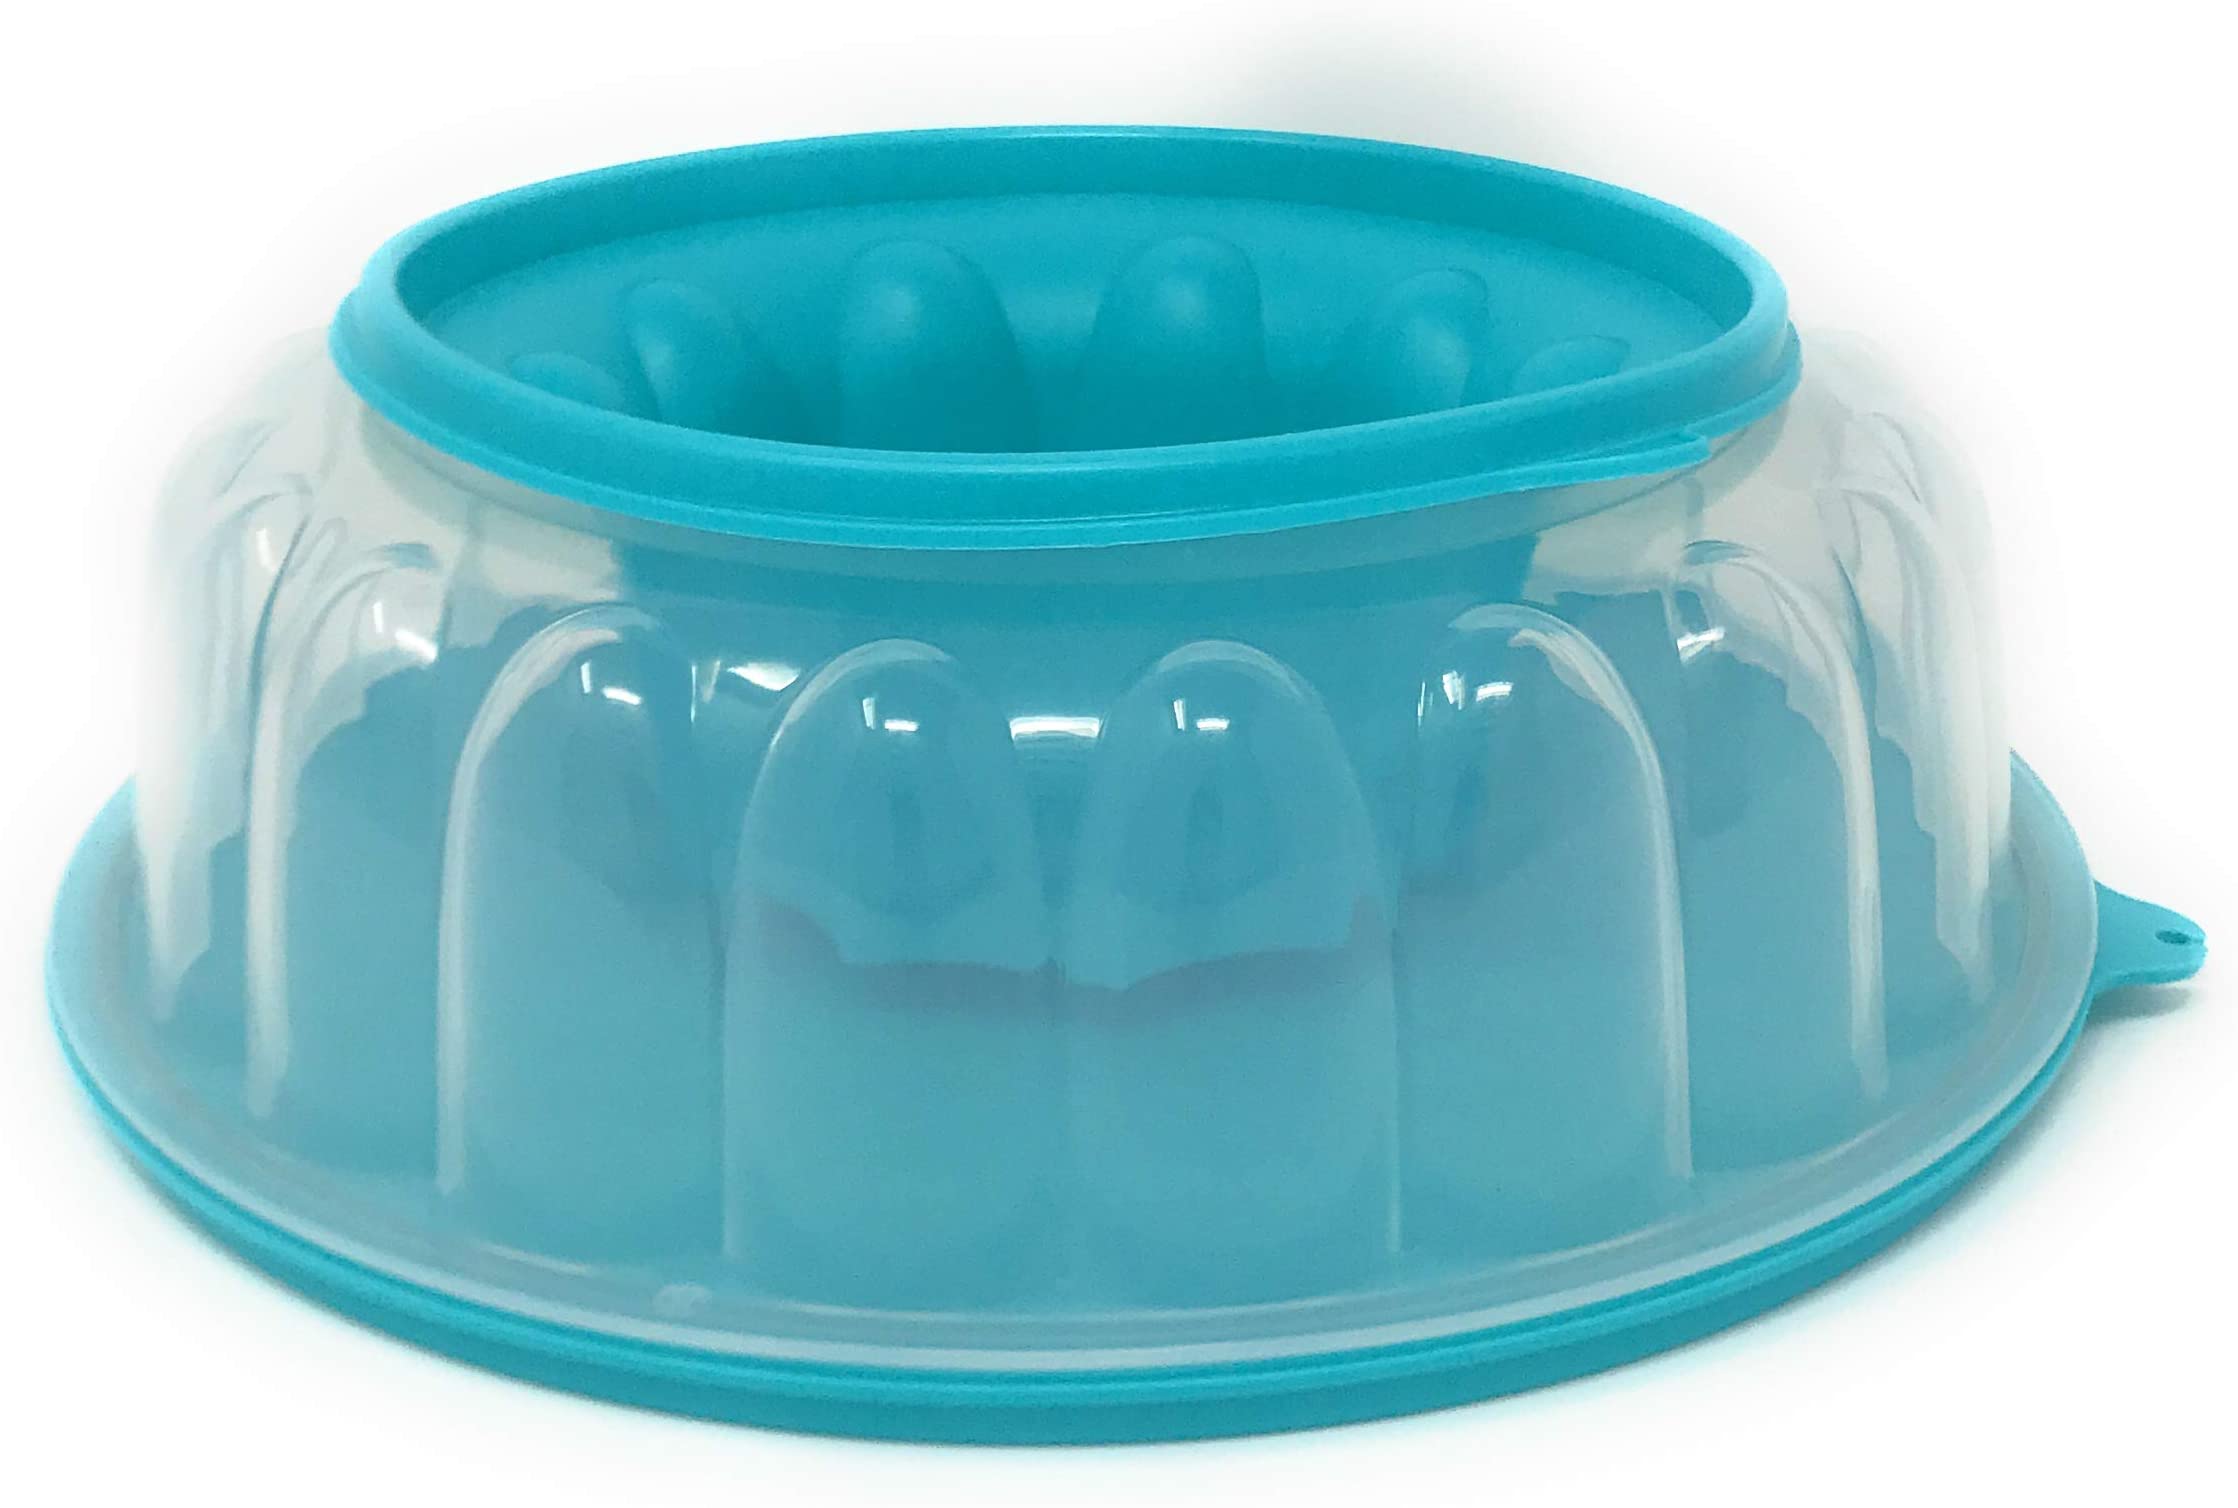 Plastic jello molds